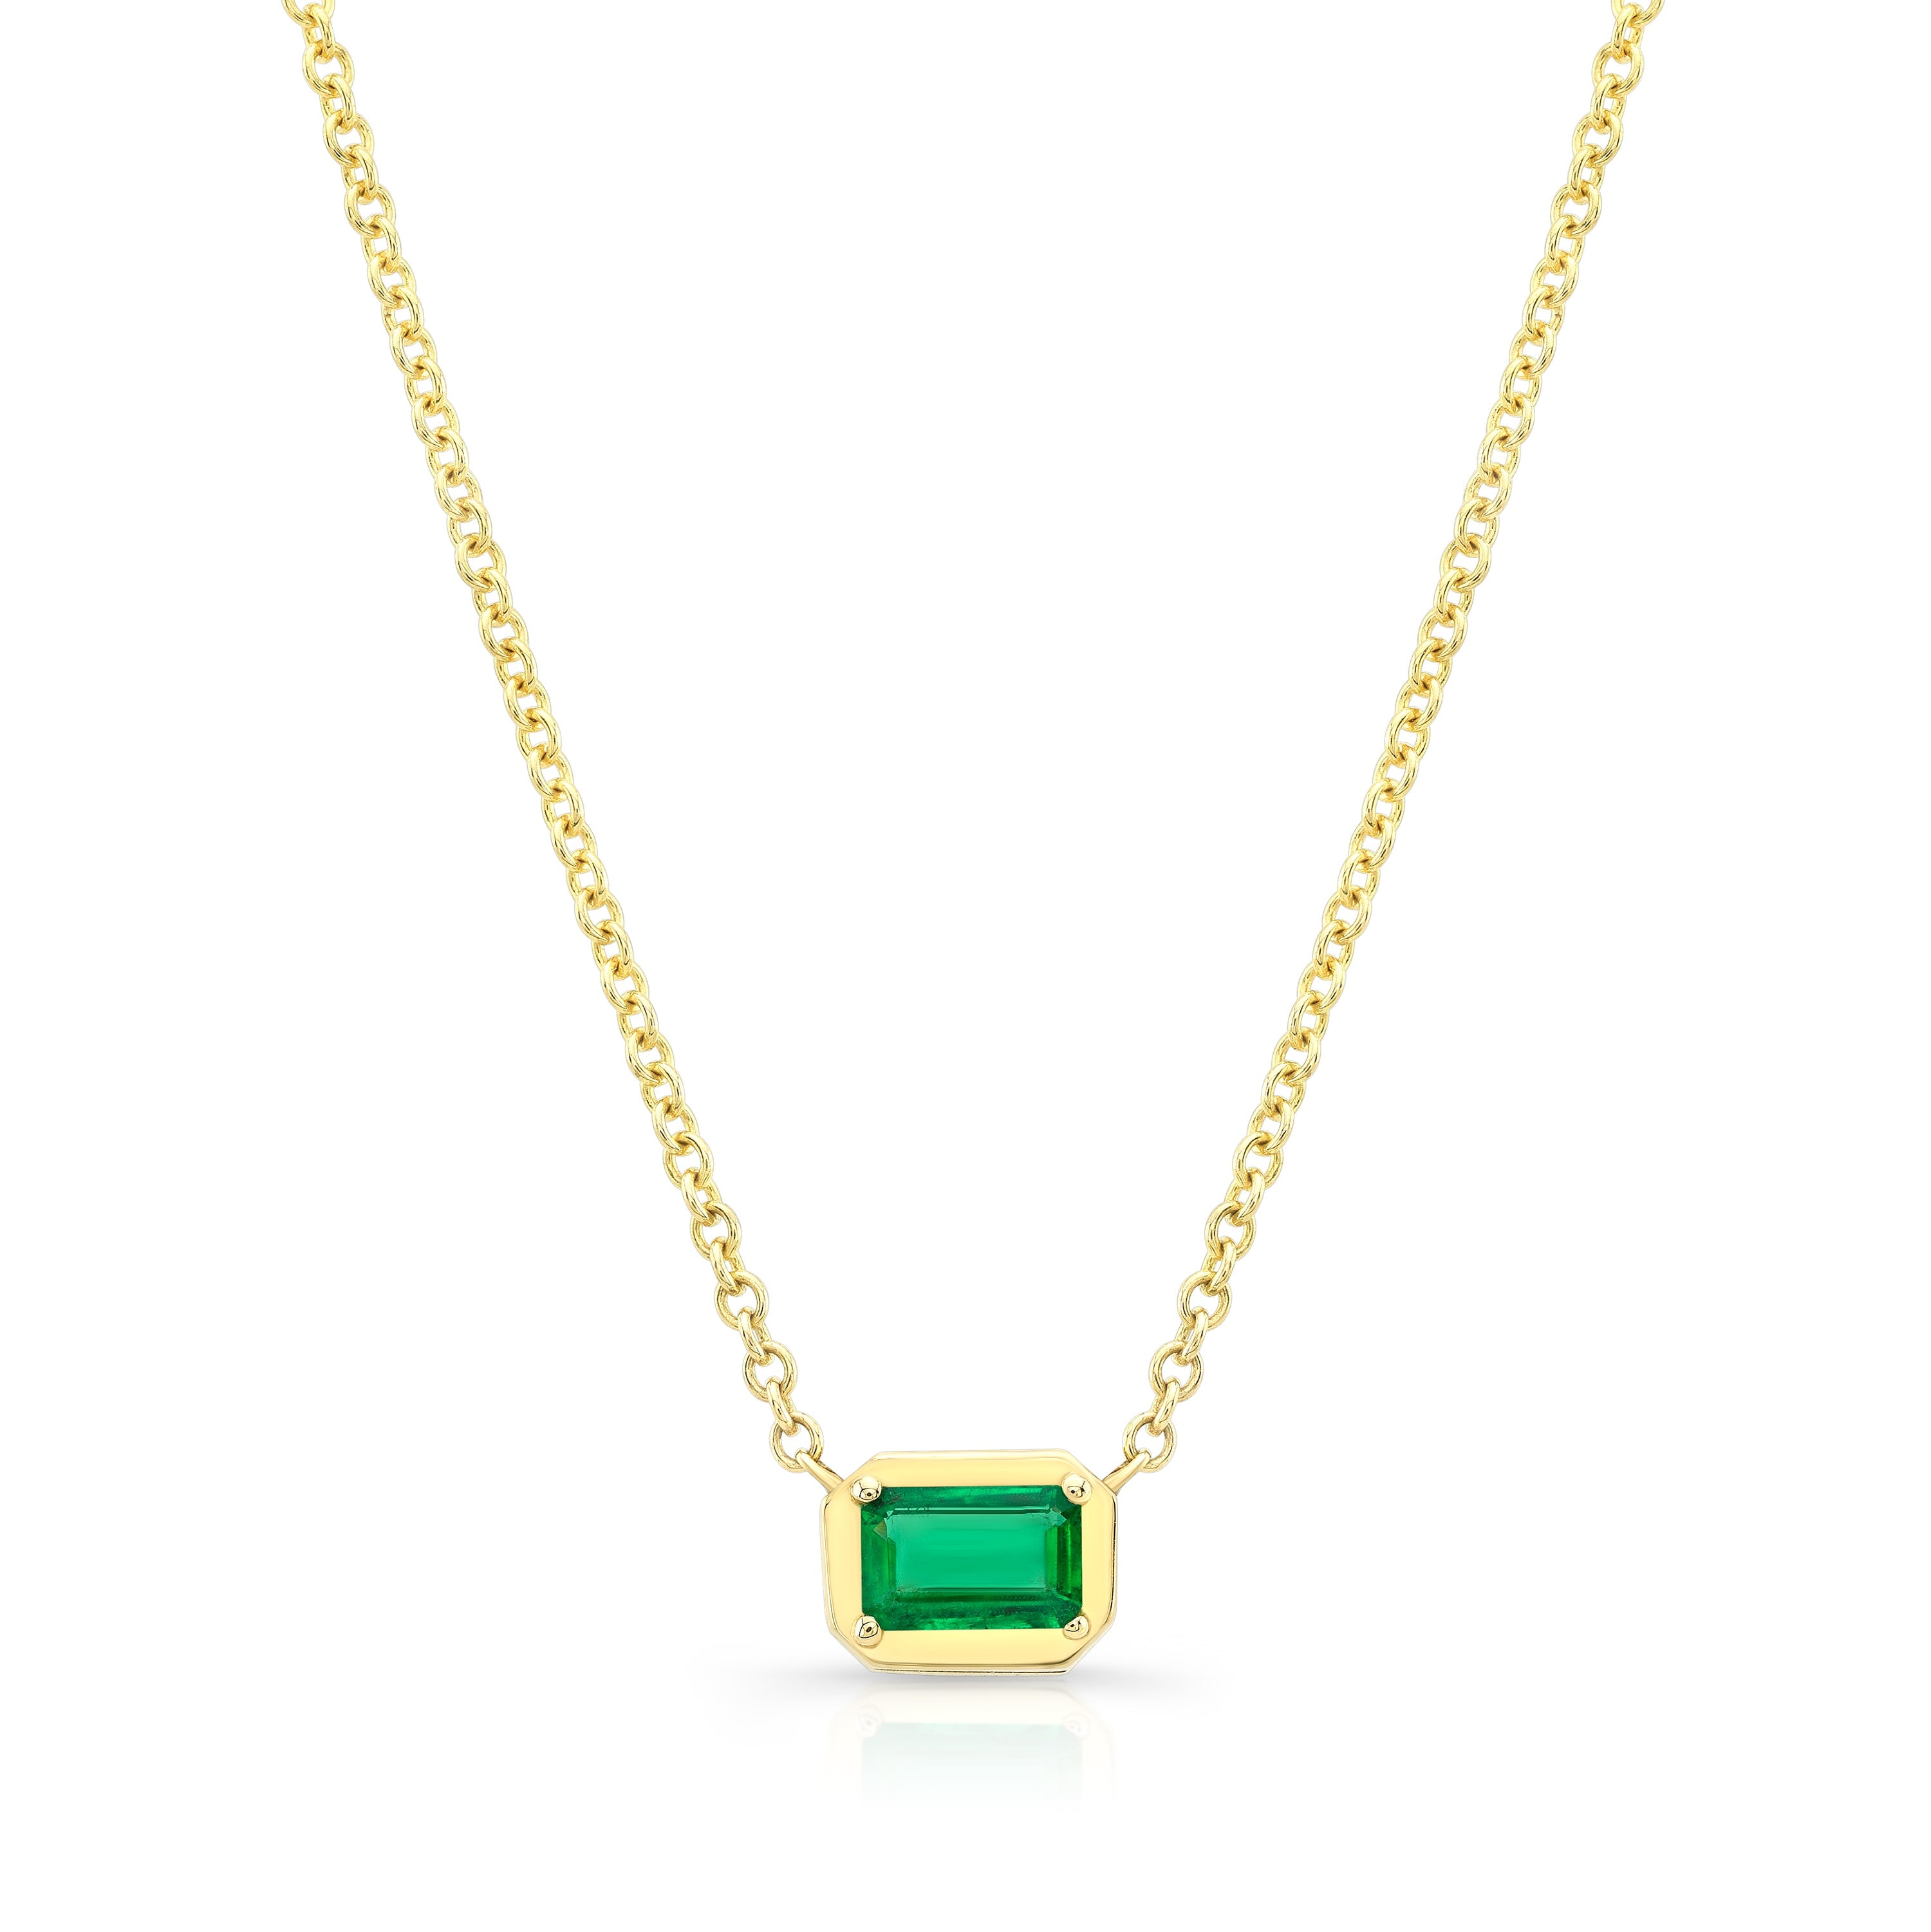 Eden Pendant - Emerald Necklaces Carter Eve Jewelry 